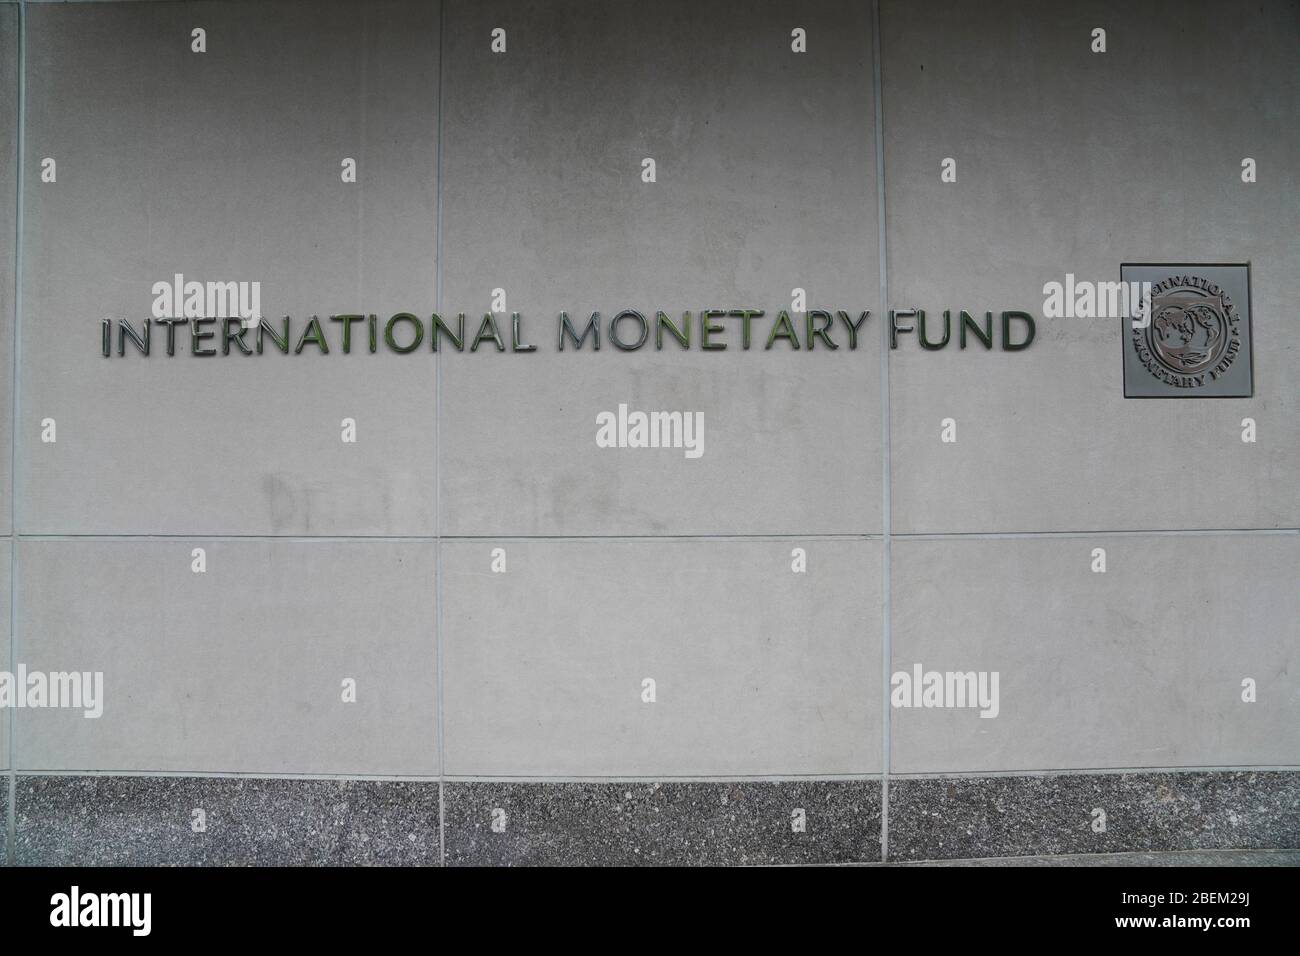 Washington, DC, EE.UU. 13 de abril de 2020. La sede del Fondo Monetario Internacional (FMI) se encuentra en Washington, DC, Estados Unidos, el 13 de abril de 2020. La economía mundial está en camino de contraerse "más" en un 3 por ciento en 2020 como resultado de la pandemia del COVID-19, mucho peor que durante la crisis financiera de 2008-09, según el informe Perspectivas de la economía mundial del Fondo Monetario Internacional (FMI) publicado el martes. Crédito: Liu Jie/Xinhua/Alamy Live News Foto de stock